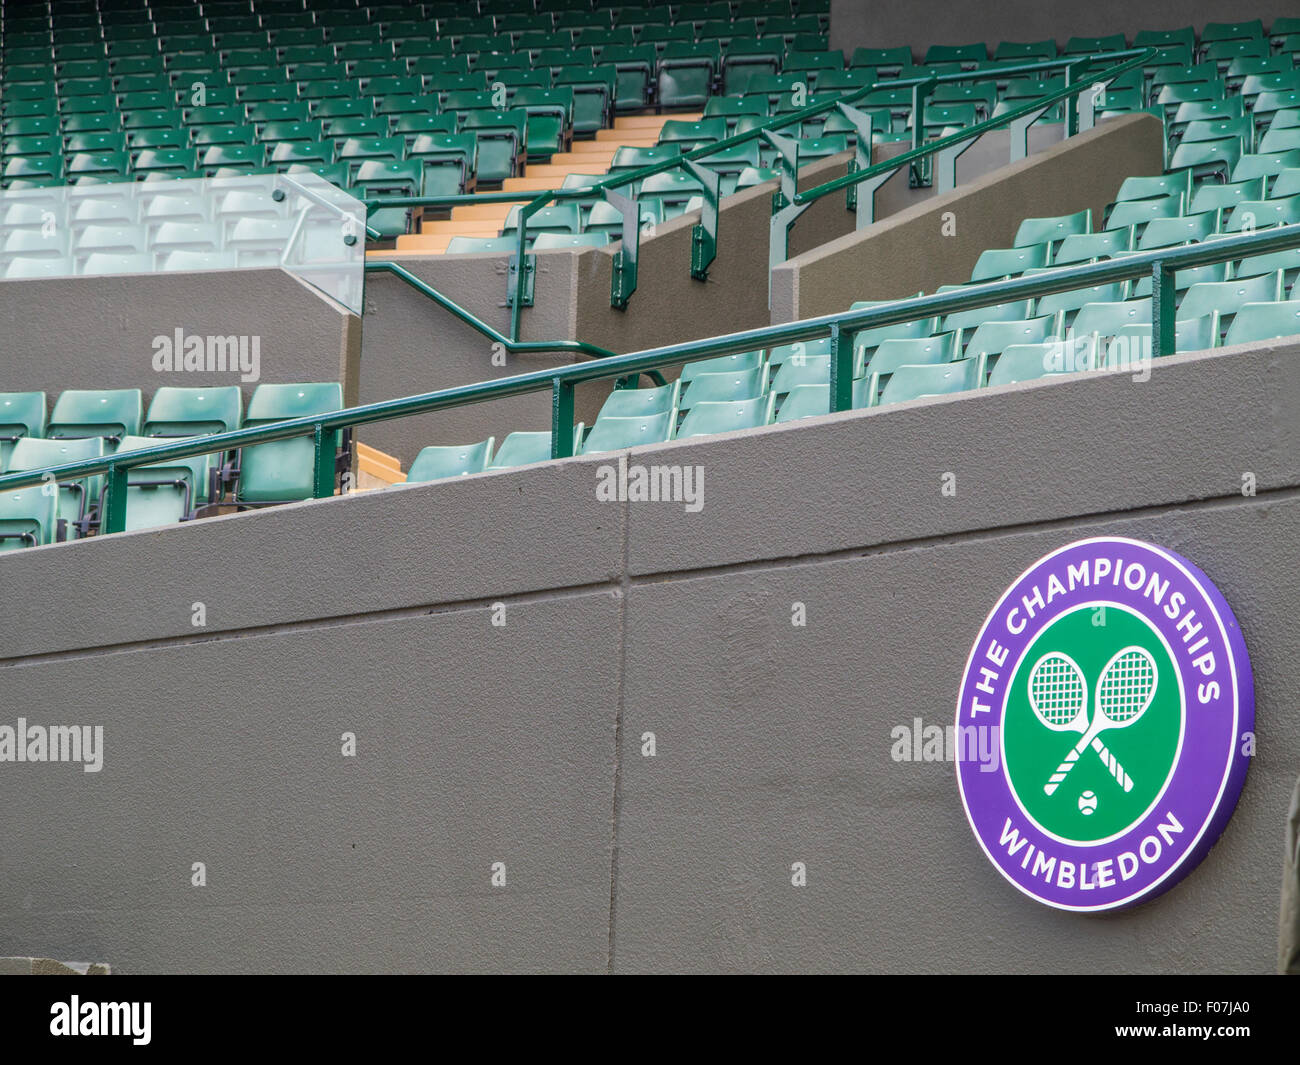 Un numéro de cour et des scènes de l'All England Club de tennis à Wimbledon, en Angleterre, la maison du tennis de Wimbledon Banque D'Images